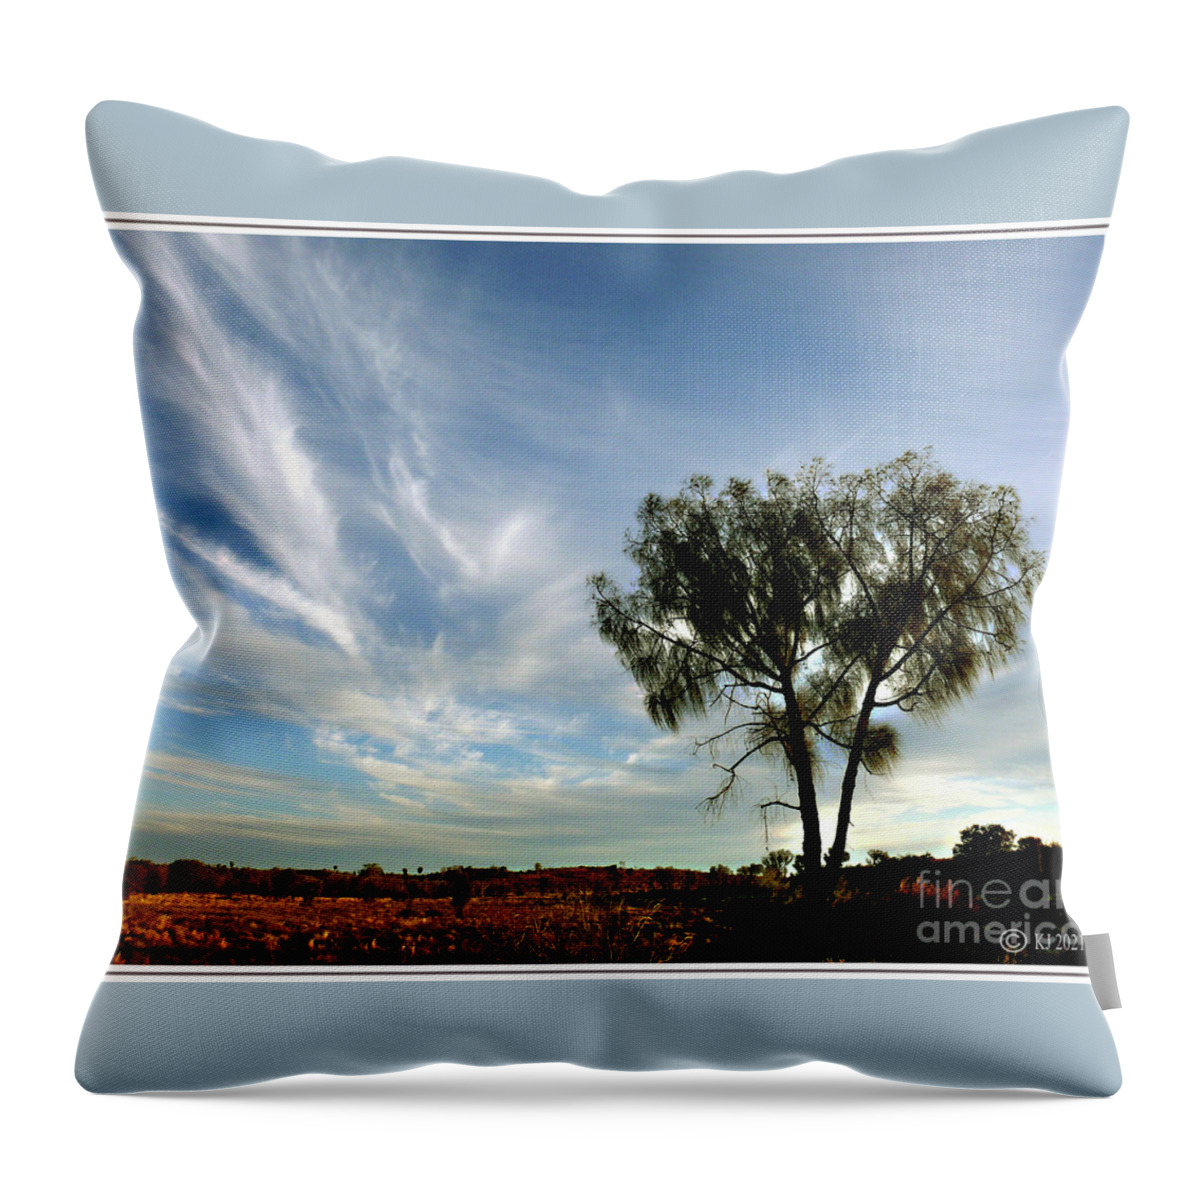 Desert Oaks Throw Pillow featuring the photograph Desert Oak - Allocasuarina decaisneana by Klaus Jaritz